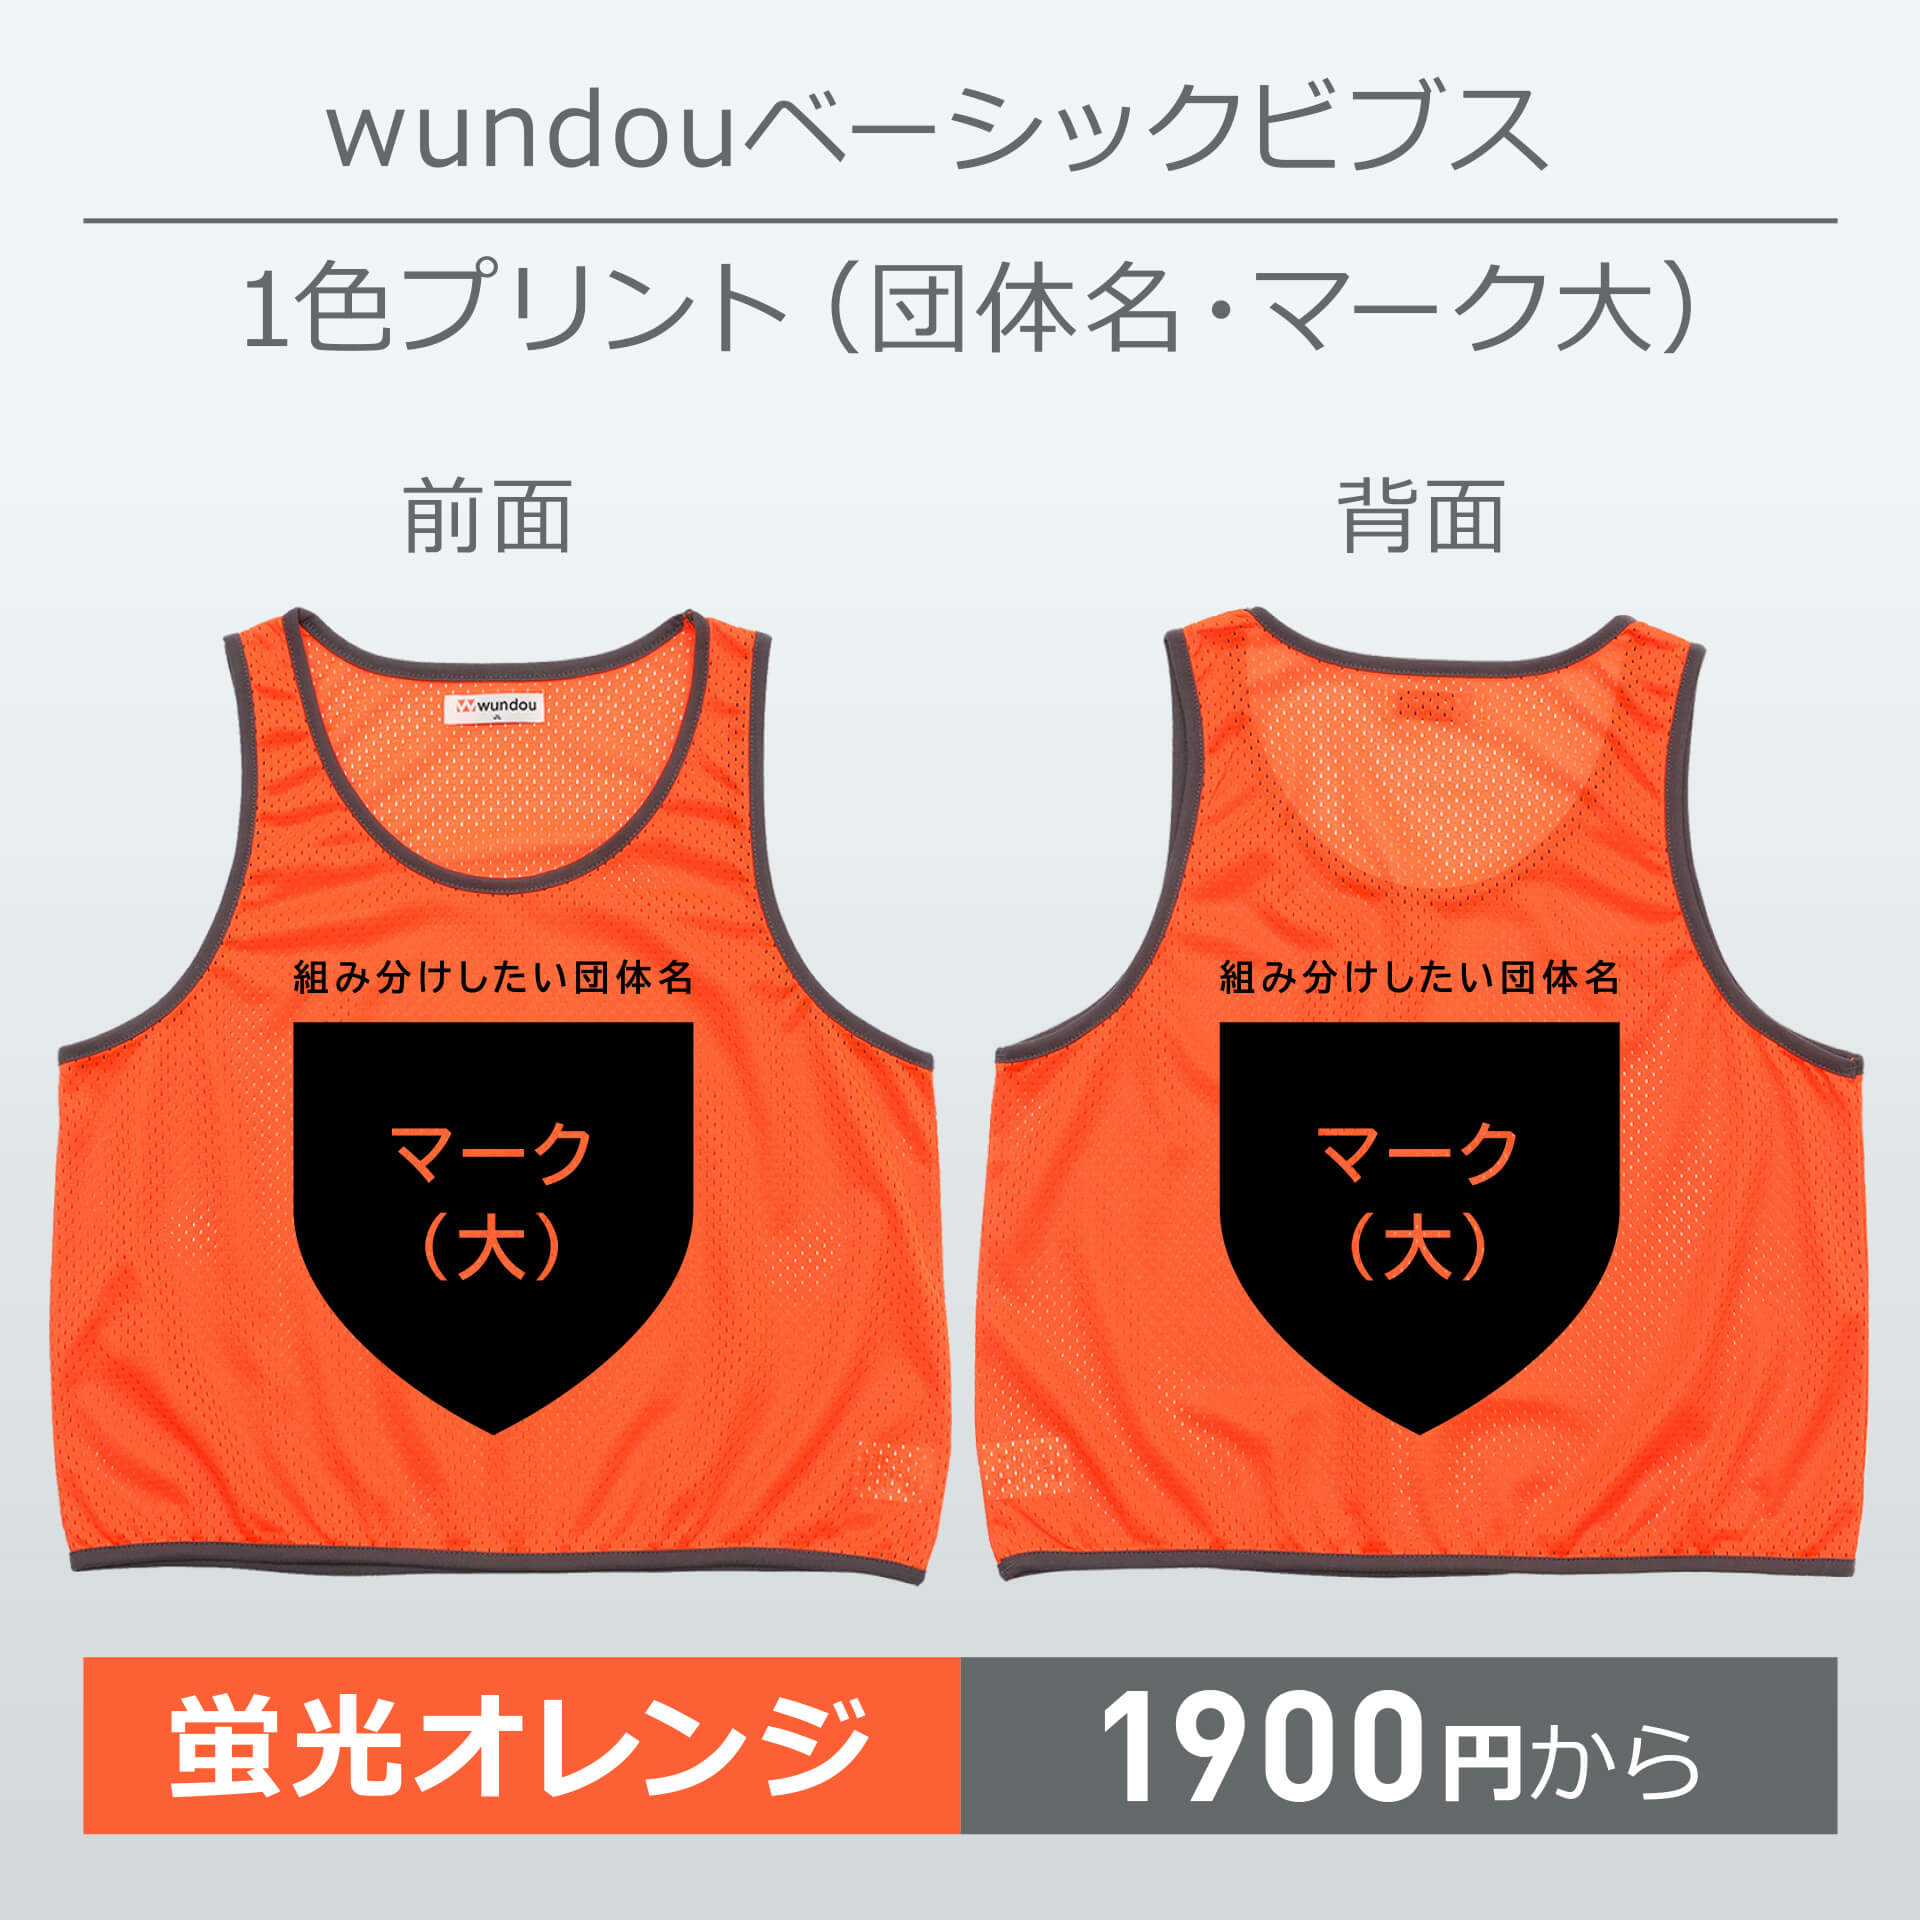 wundou・ベーシックビブス・1色プリント(団体名・マーク大)・蛍光オレンジ